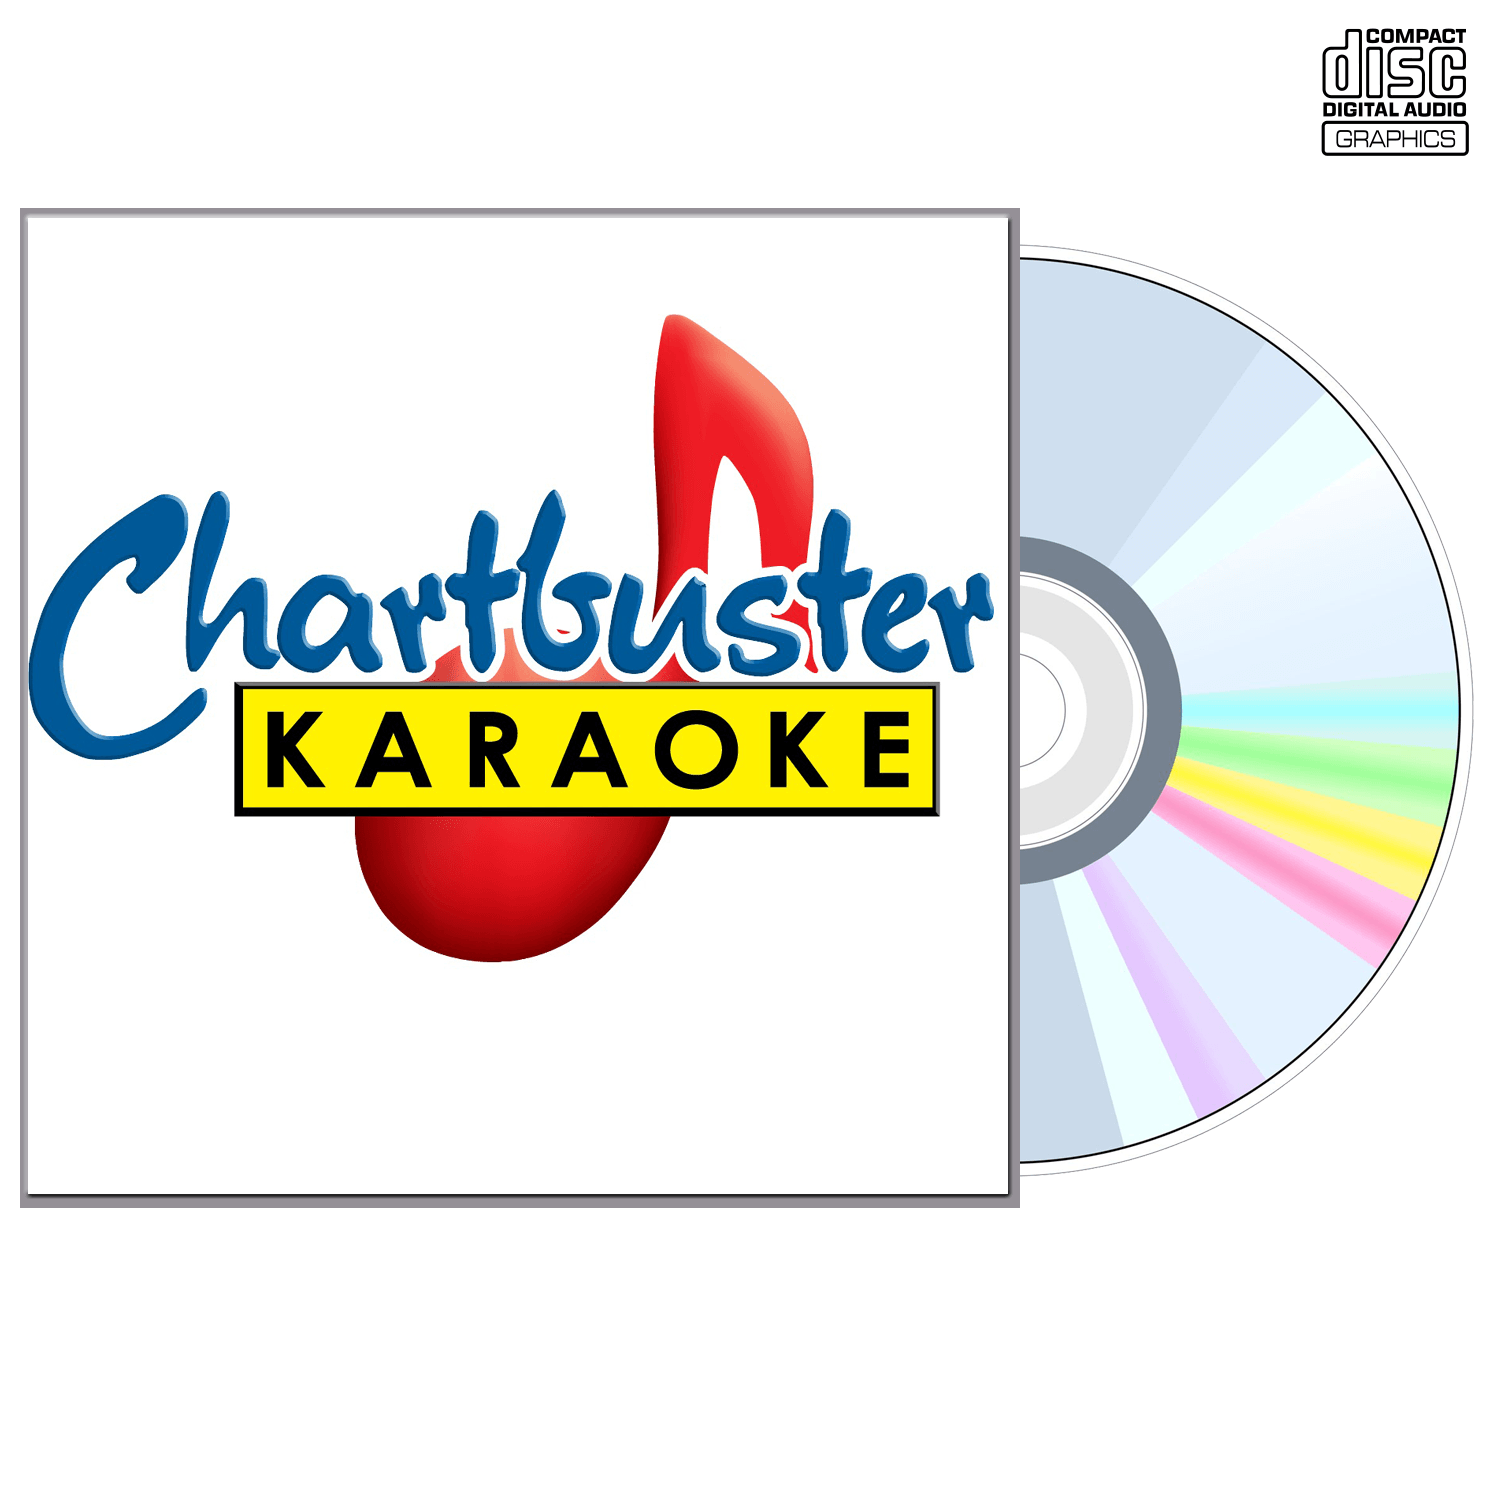 John Mayer - CD+G - Chartbuster Karaoke - Karaoke Home Entertainment